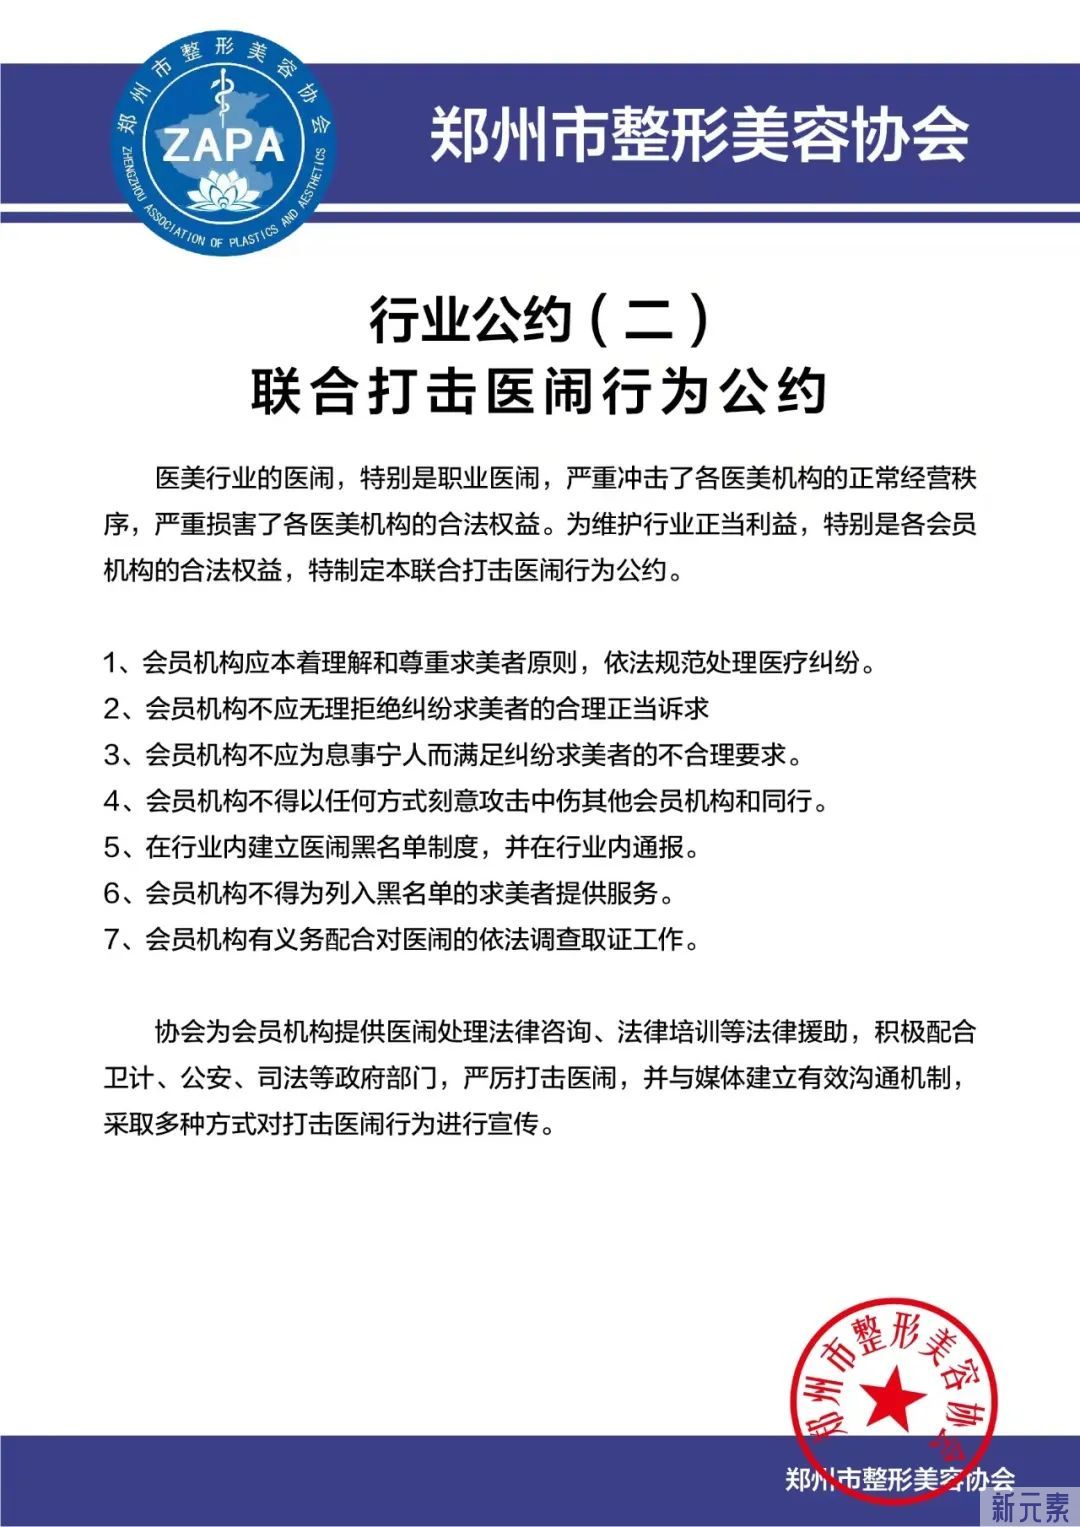 郑州市整形美容协会发布郑州市医疗美容行业自律公约 图片-4